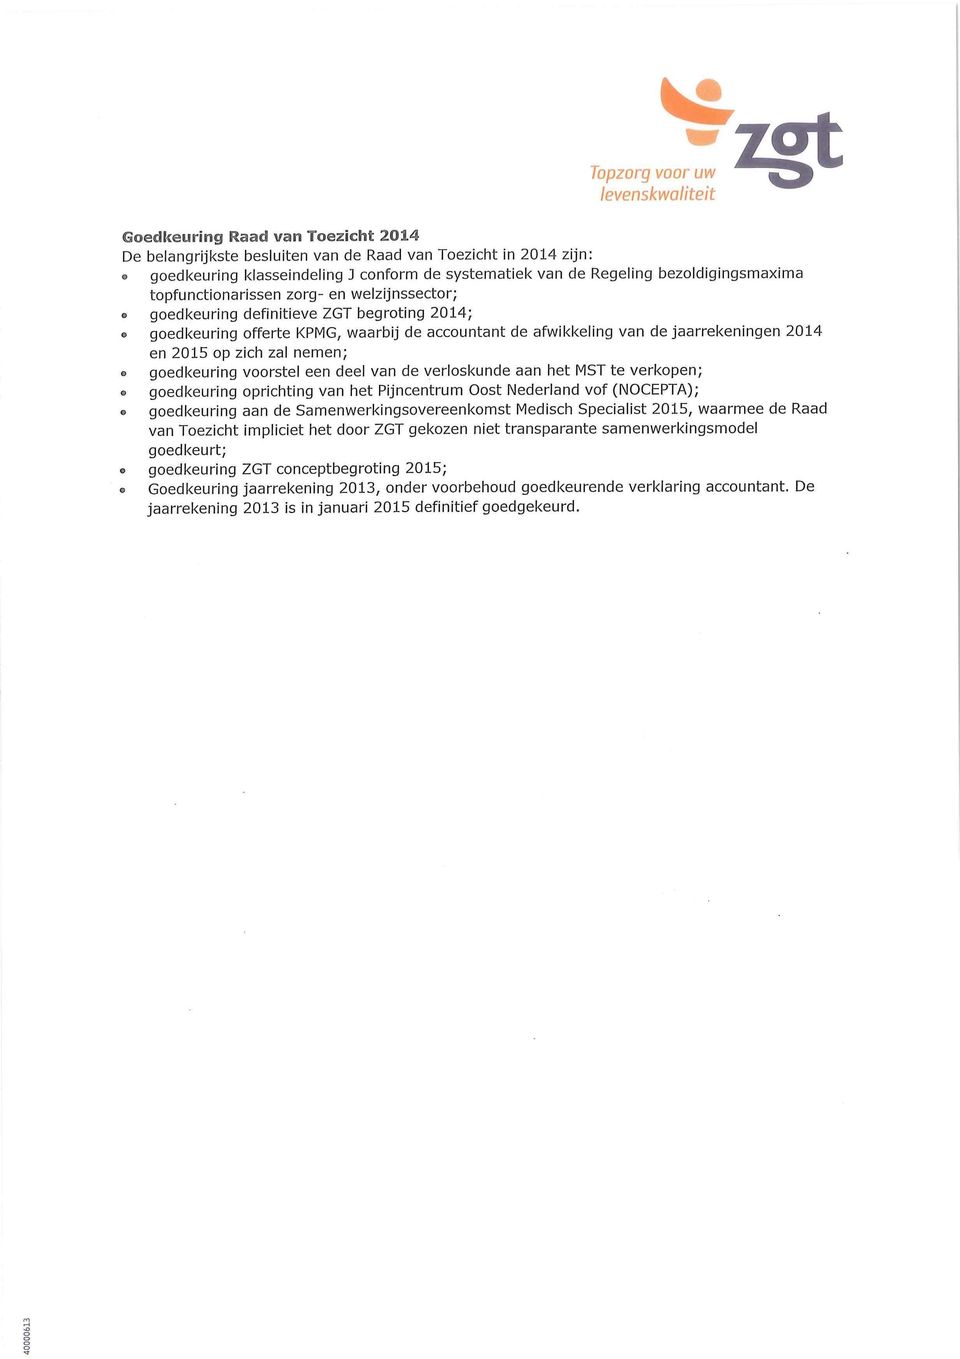 nemen; O goedkeuring voorstel een deel van de verloskunde aan het MST te verkopen; goedkeuring oprichting van het Pijncentrum Oost Nederland vof (NOCEPTA); goedkeuring aan de